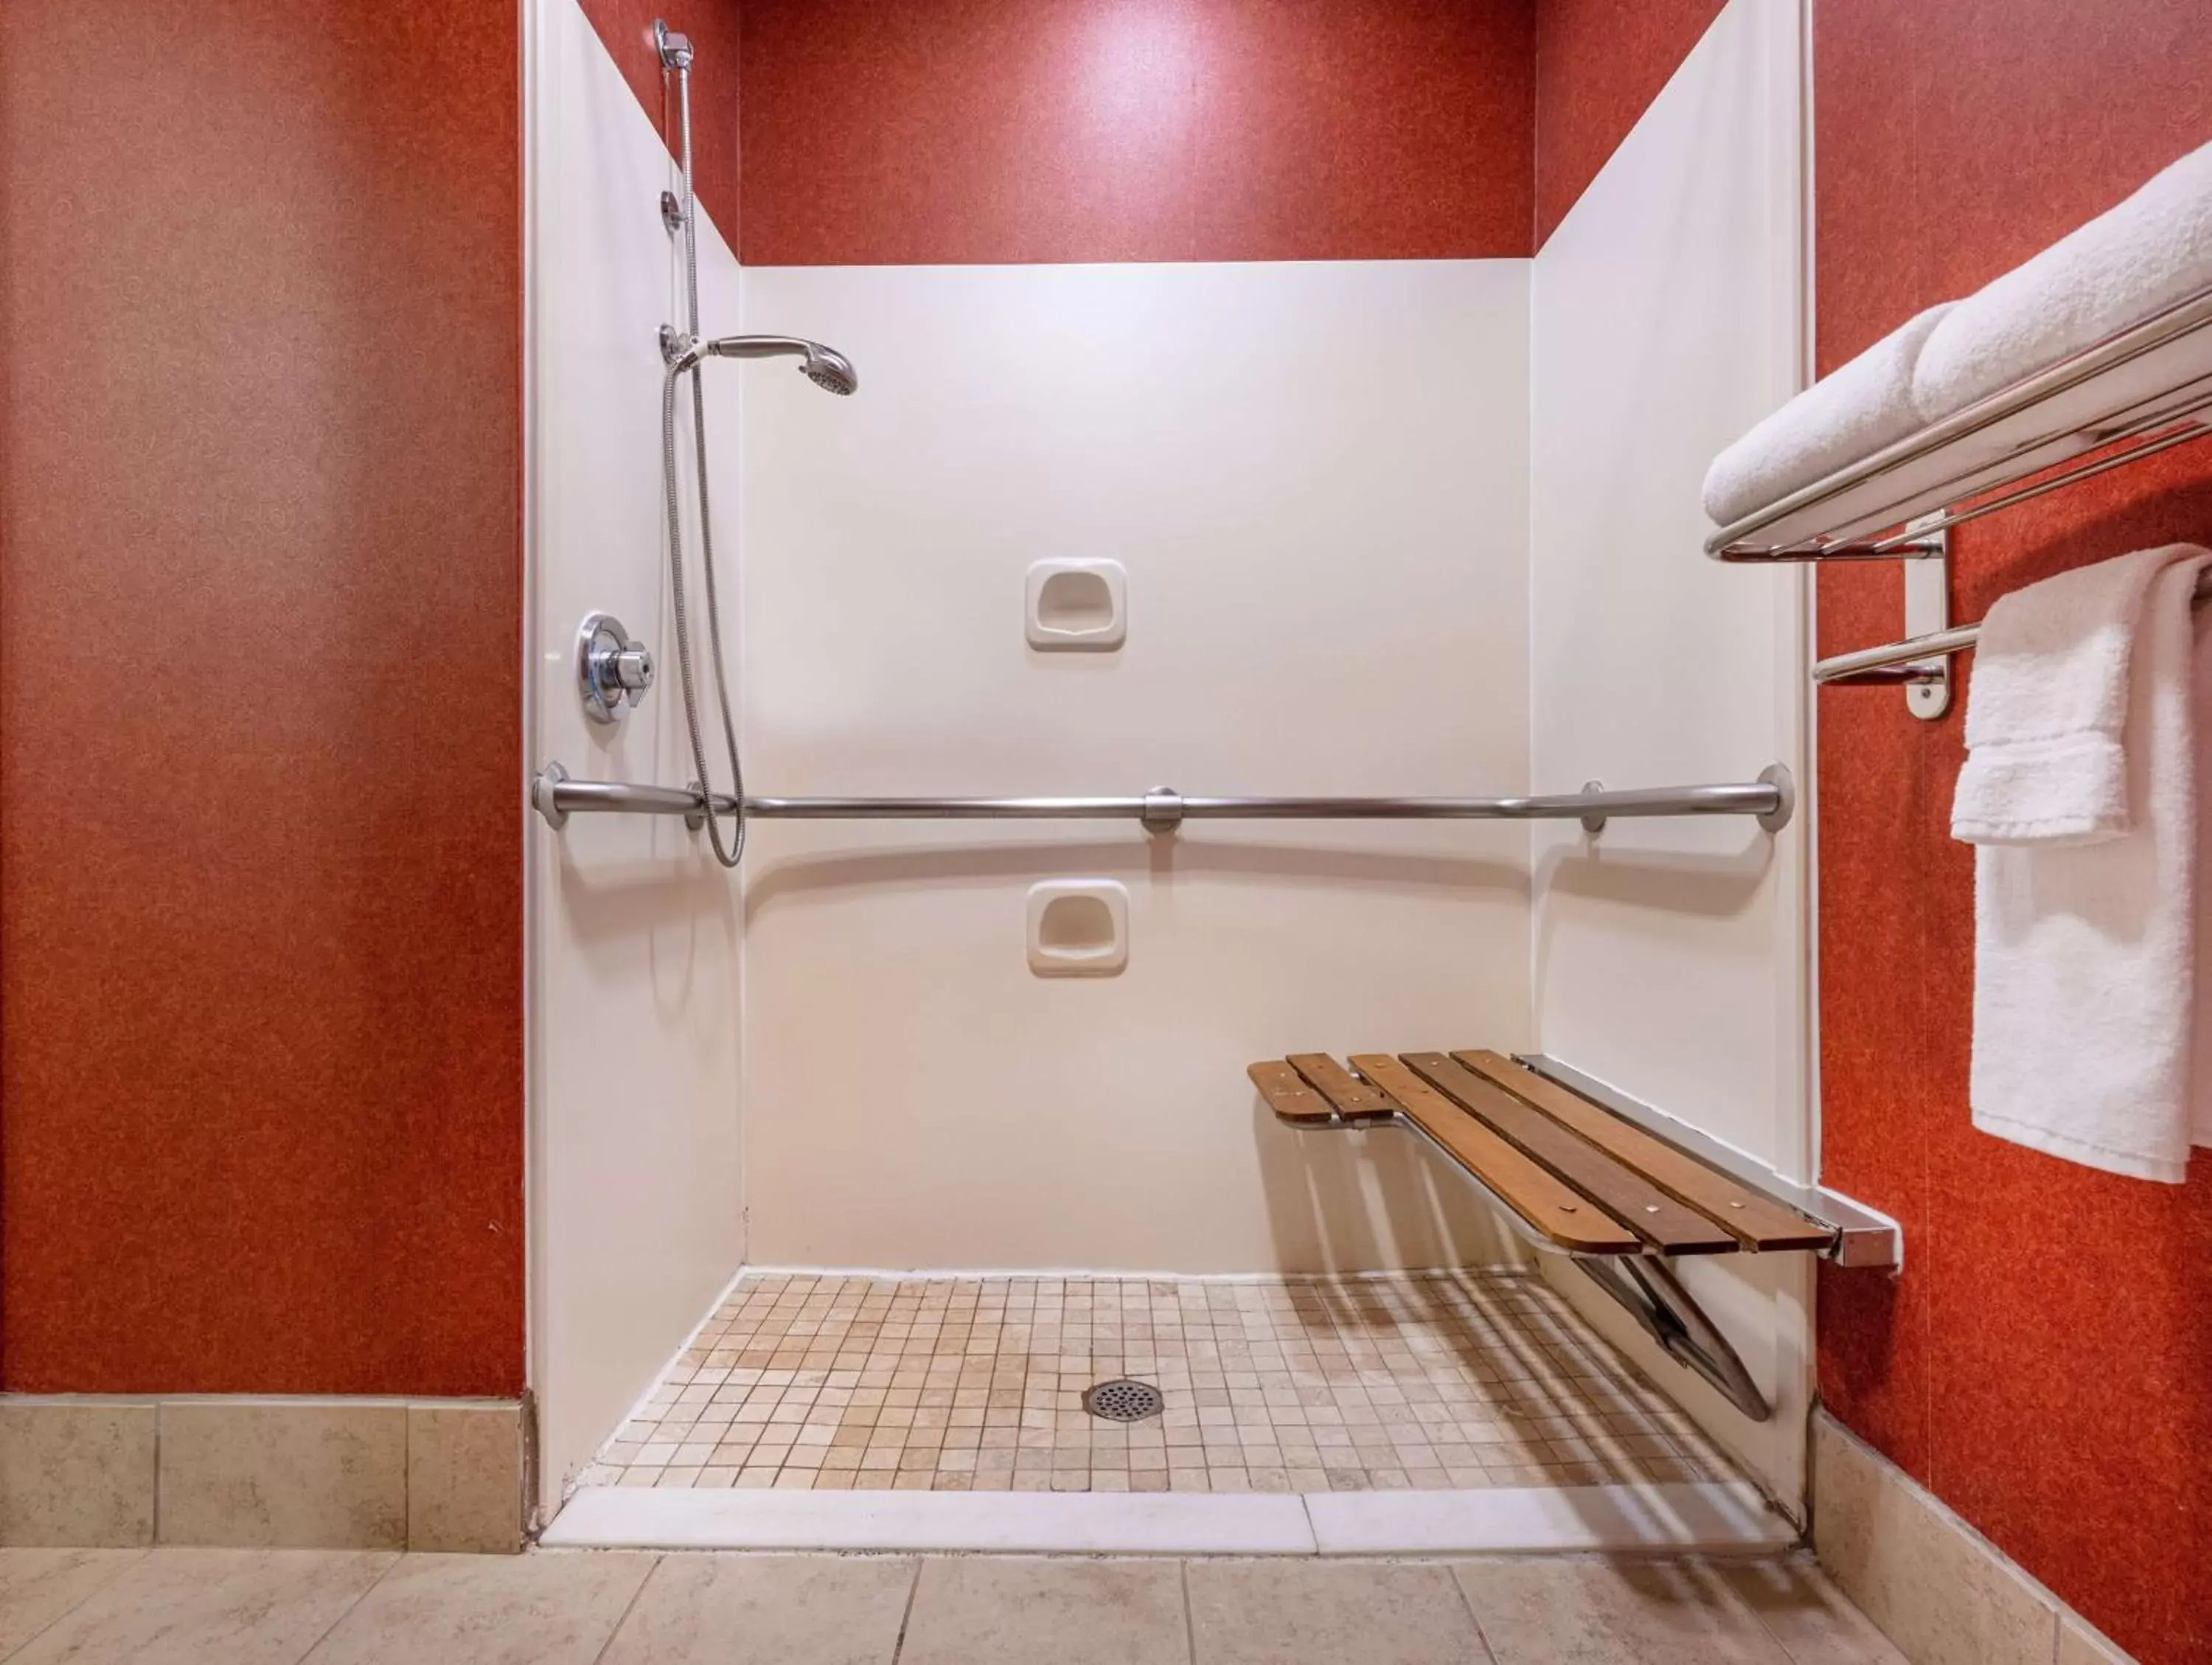 Bathroom in Hyatt House Herndon/Reston